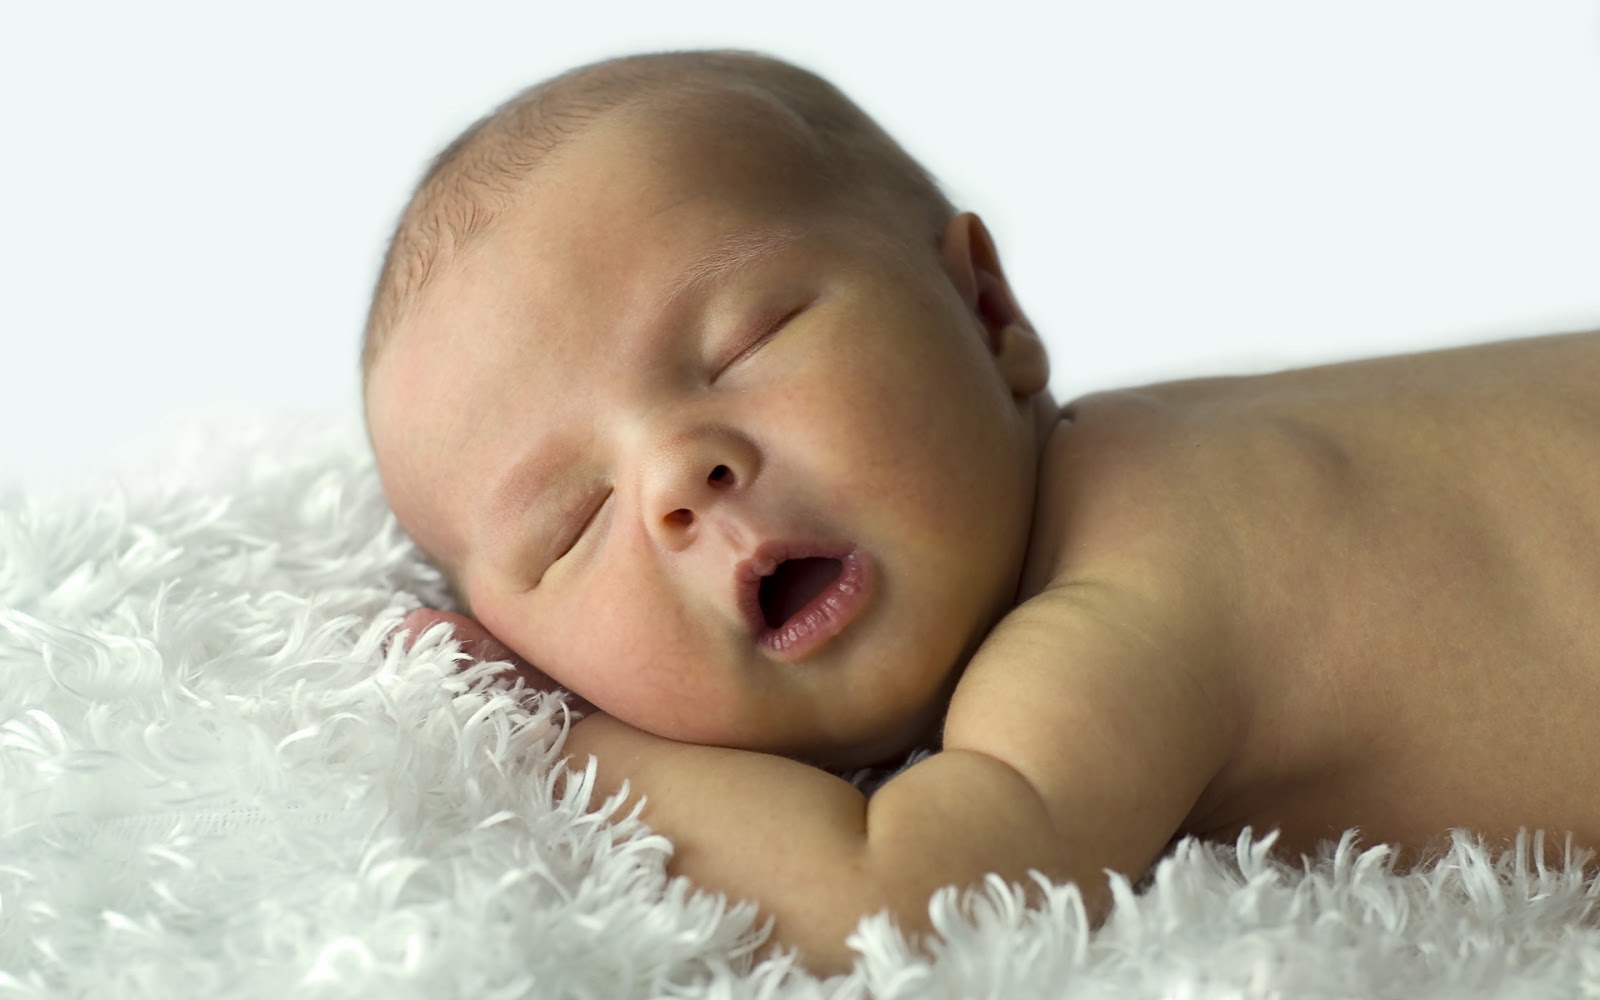 Gambar Bayi Sedang Tidur Lucu Bangetz Si Gambar